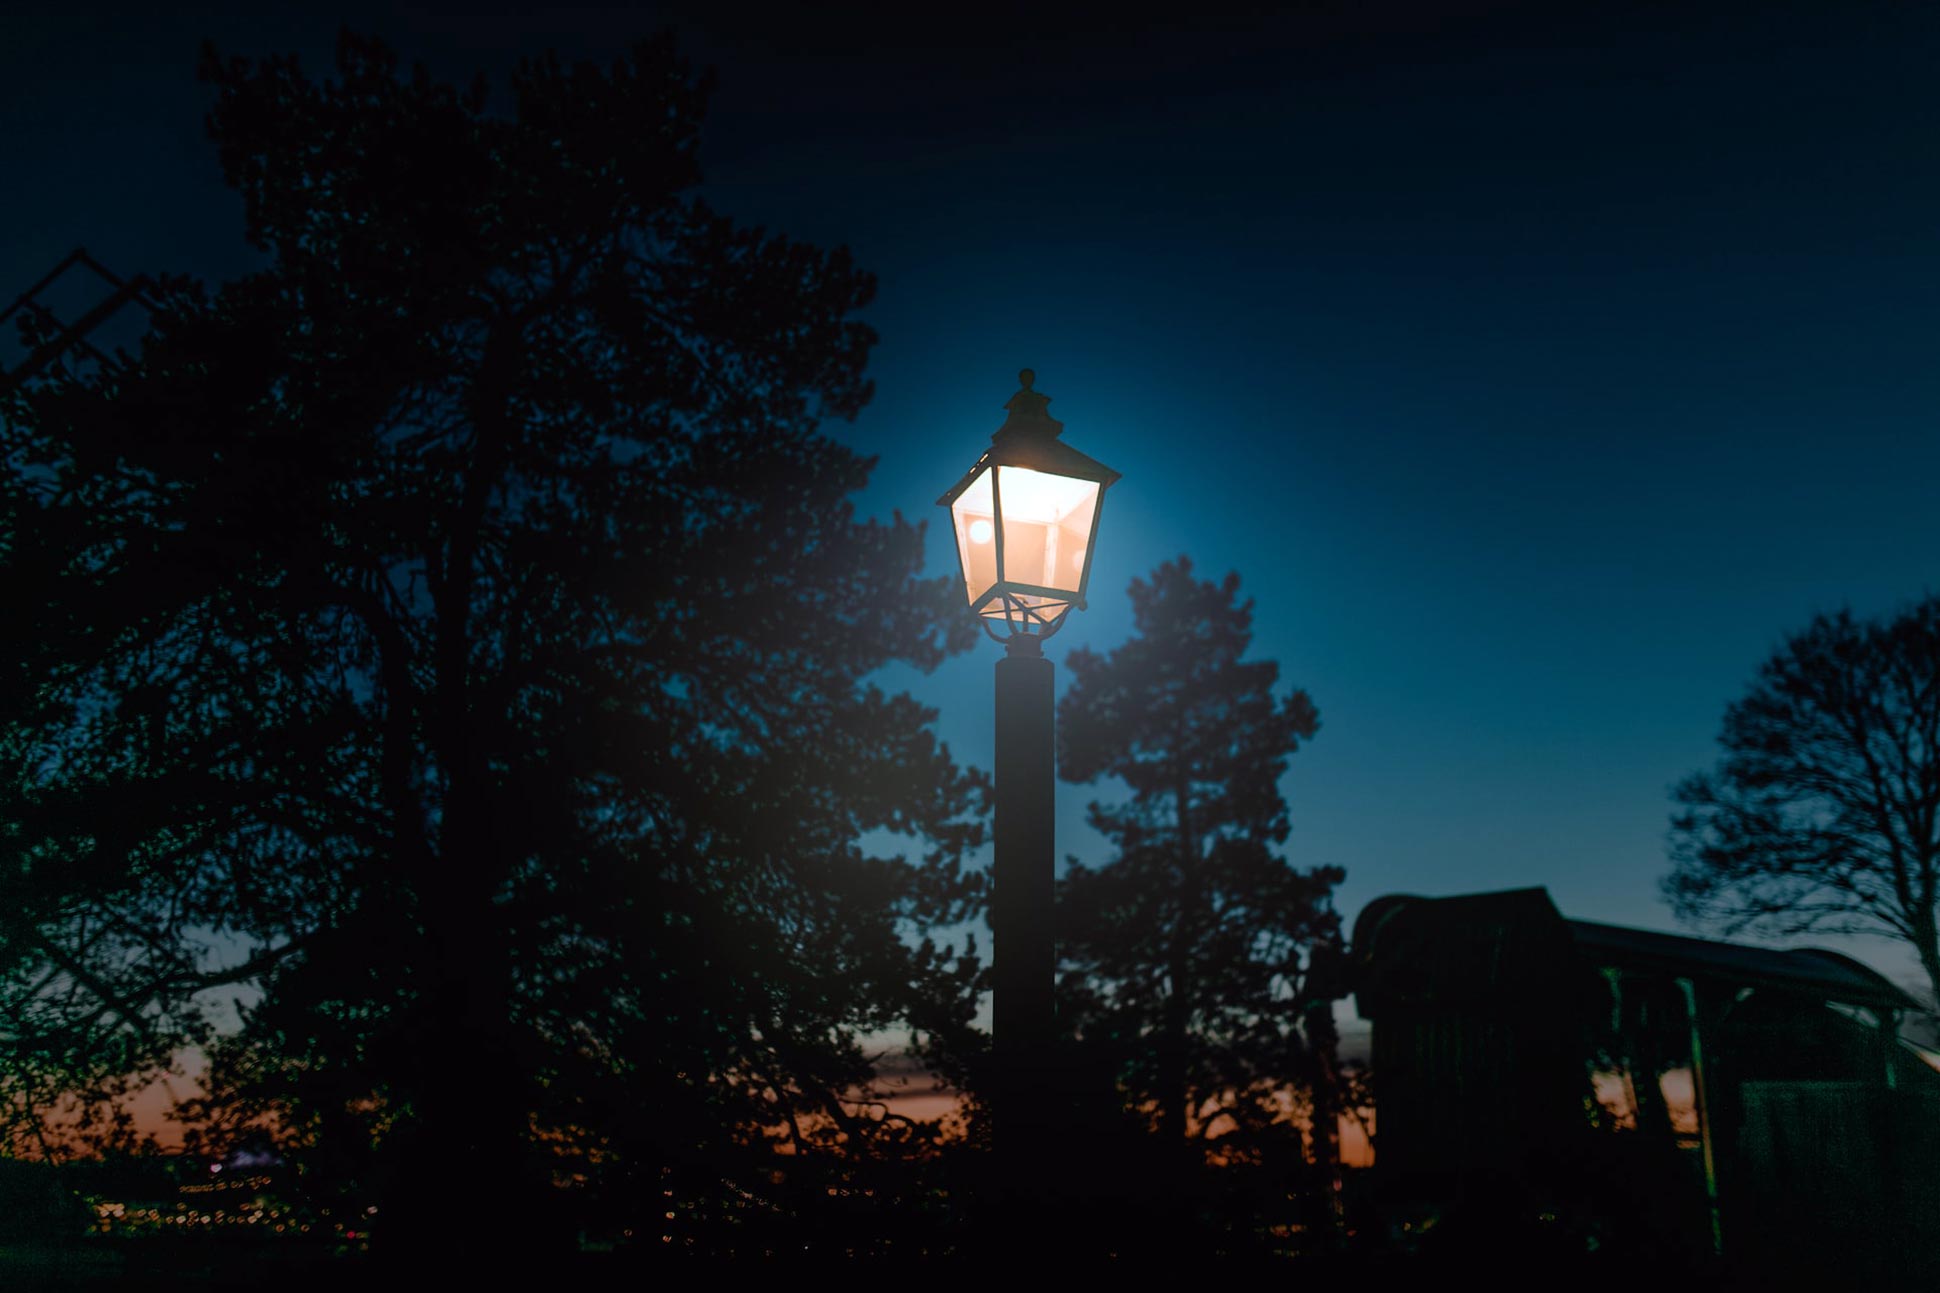 A lantern burns at dusk in Royal Djurgården during Halloween in Stockholm, Sweden